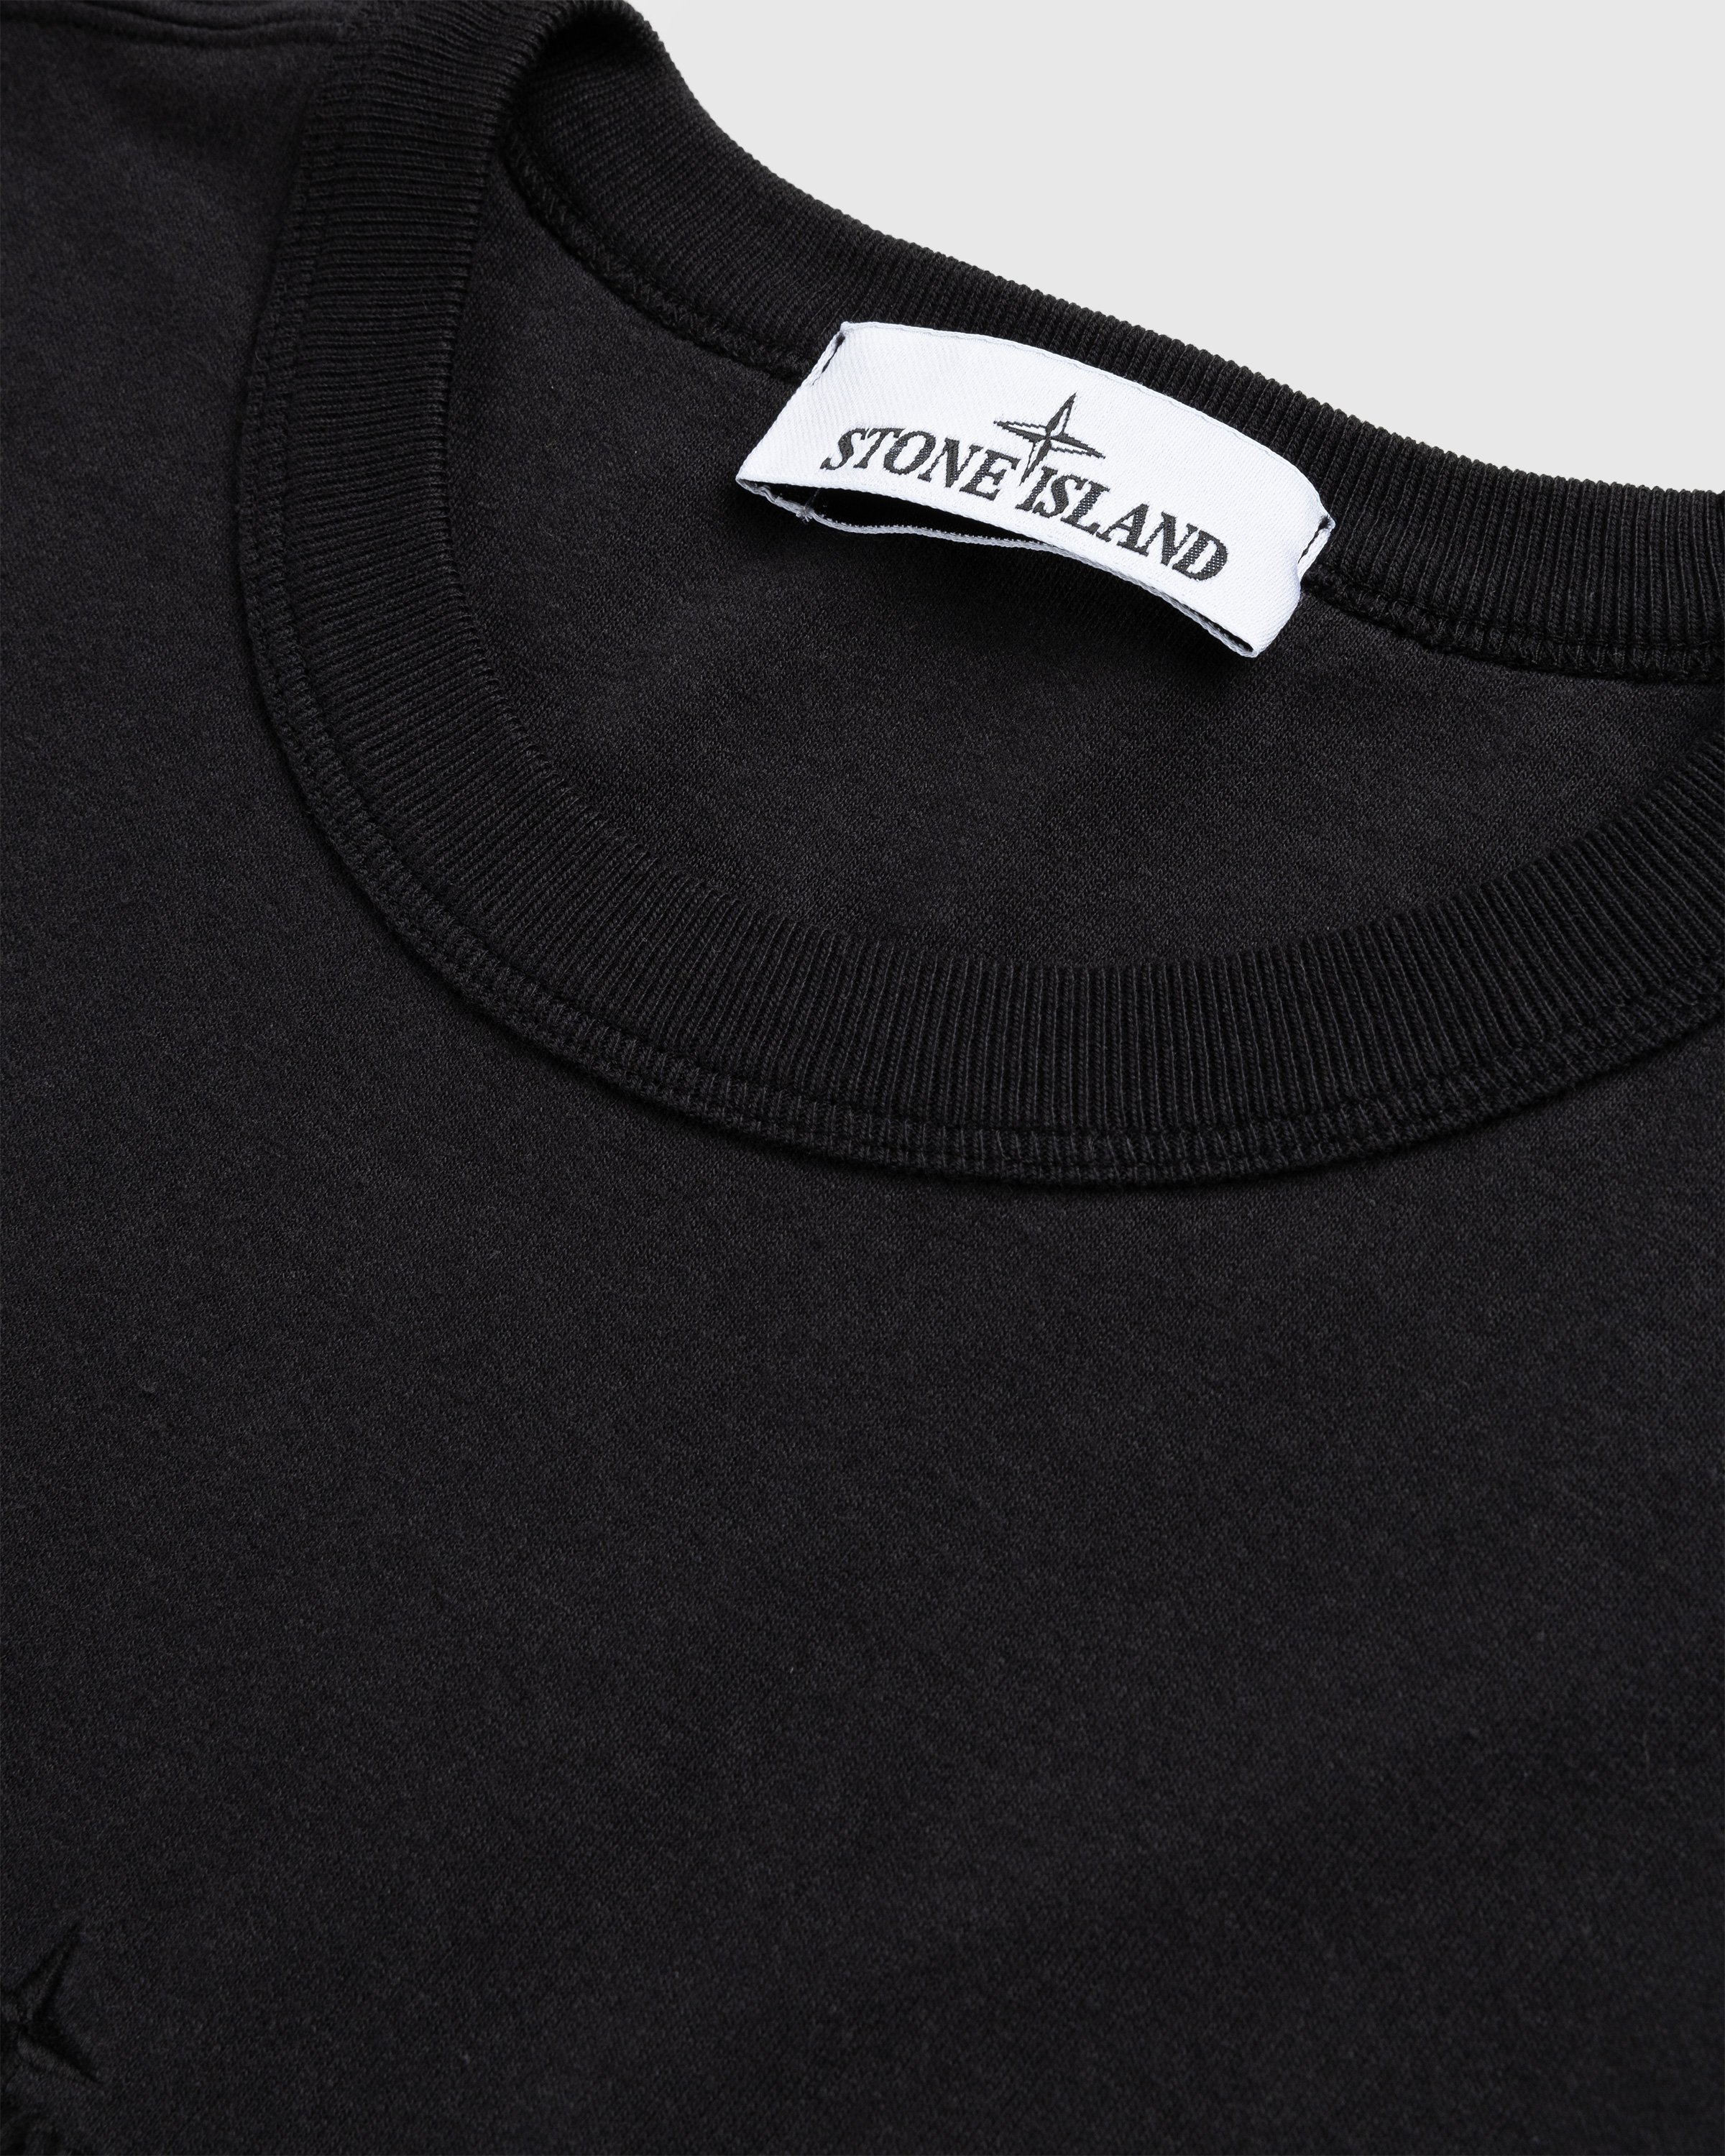 Stone Island - Garment-Dyed Logo T-Shirt Black - Clothing - Black - Image 6